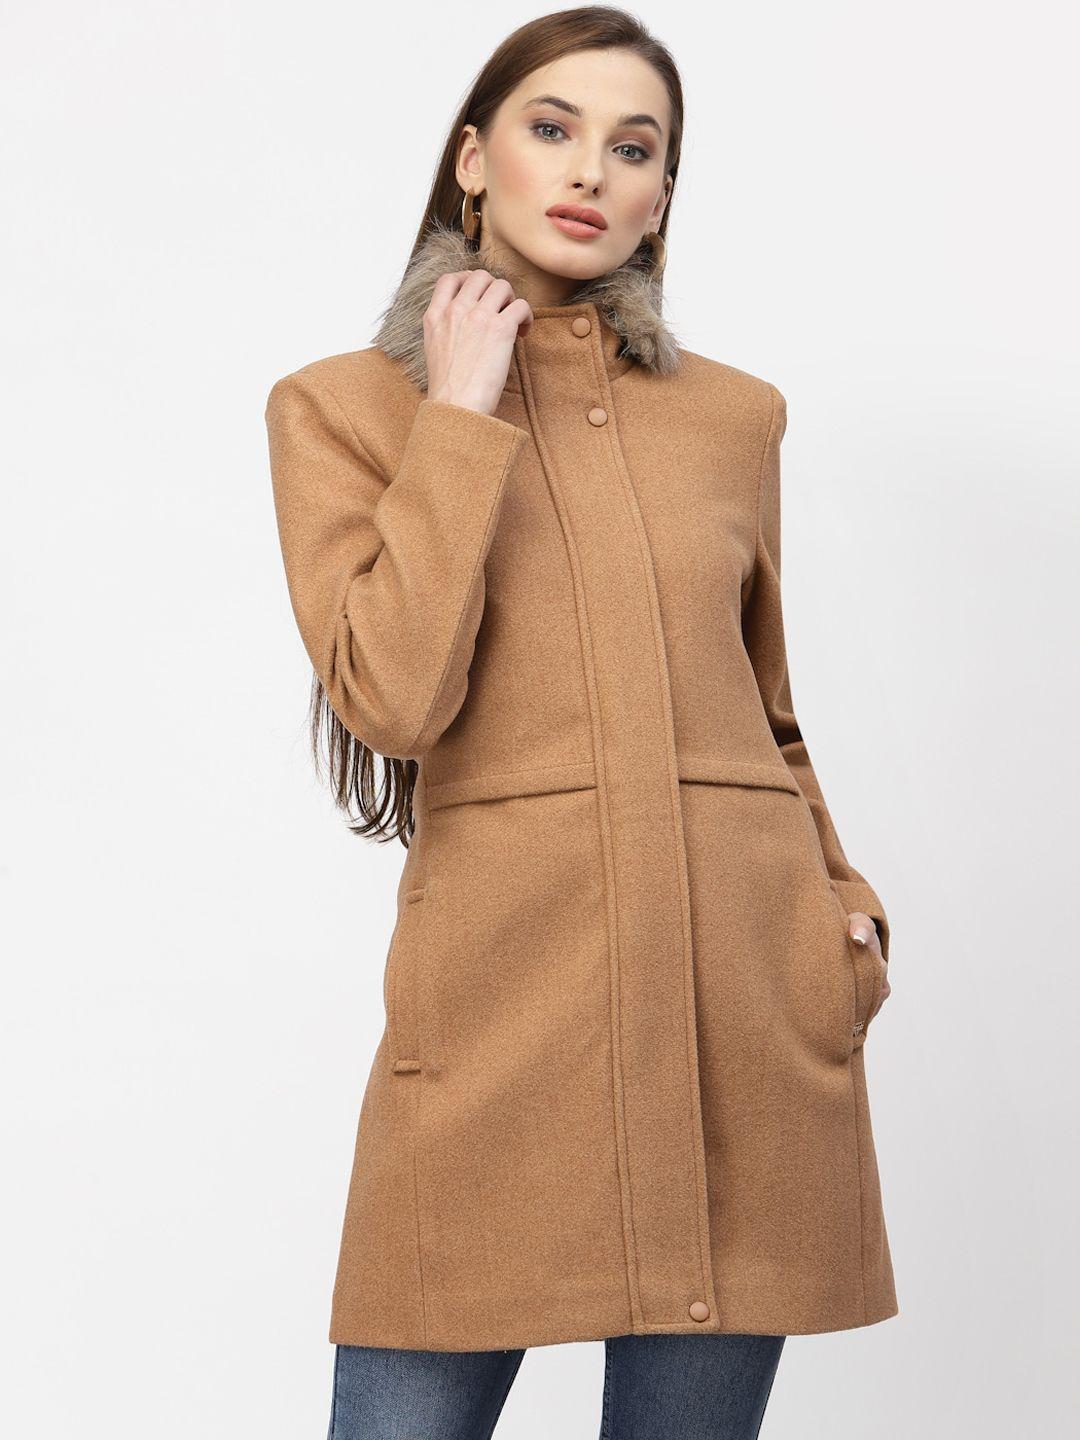 juelle women faux fur trim longline overcoats